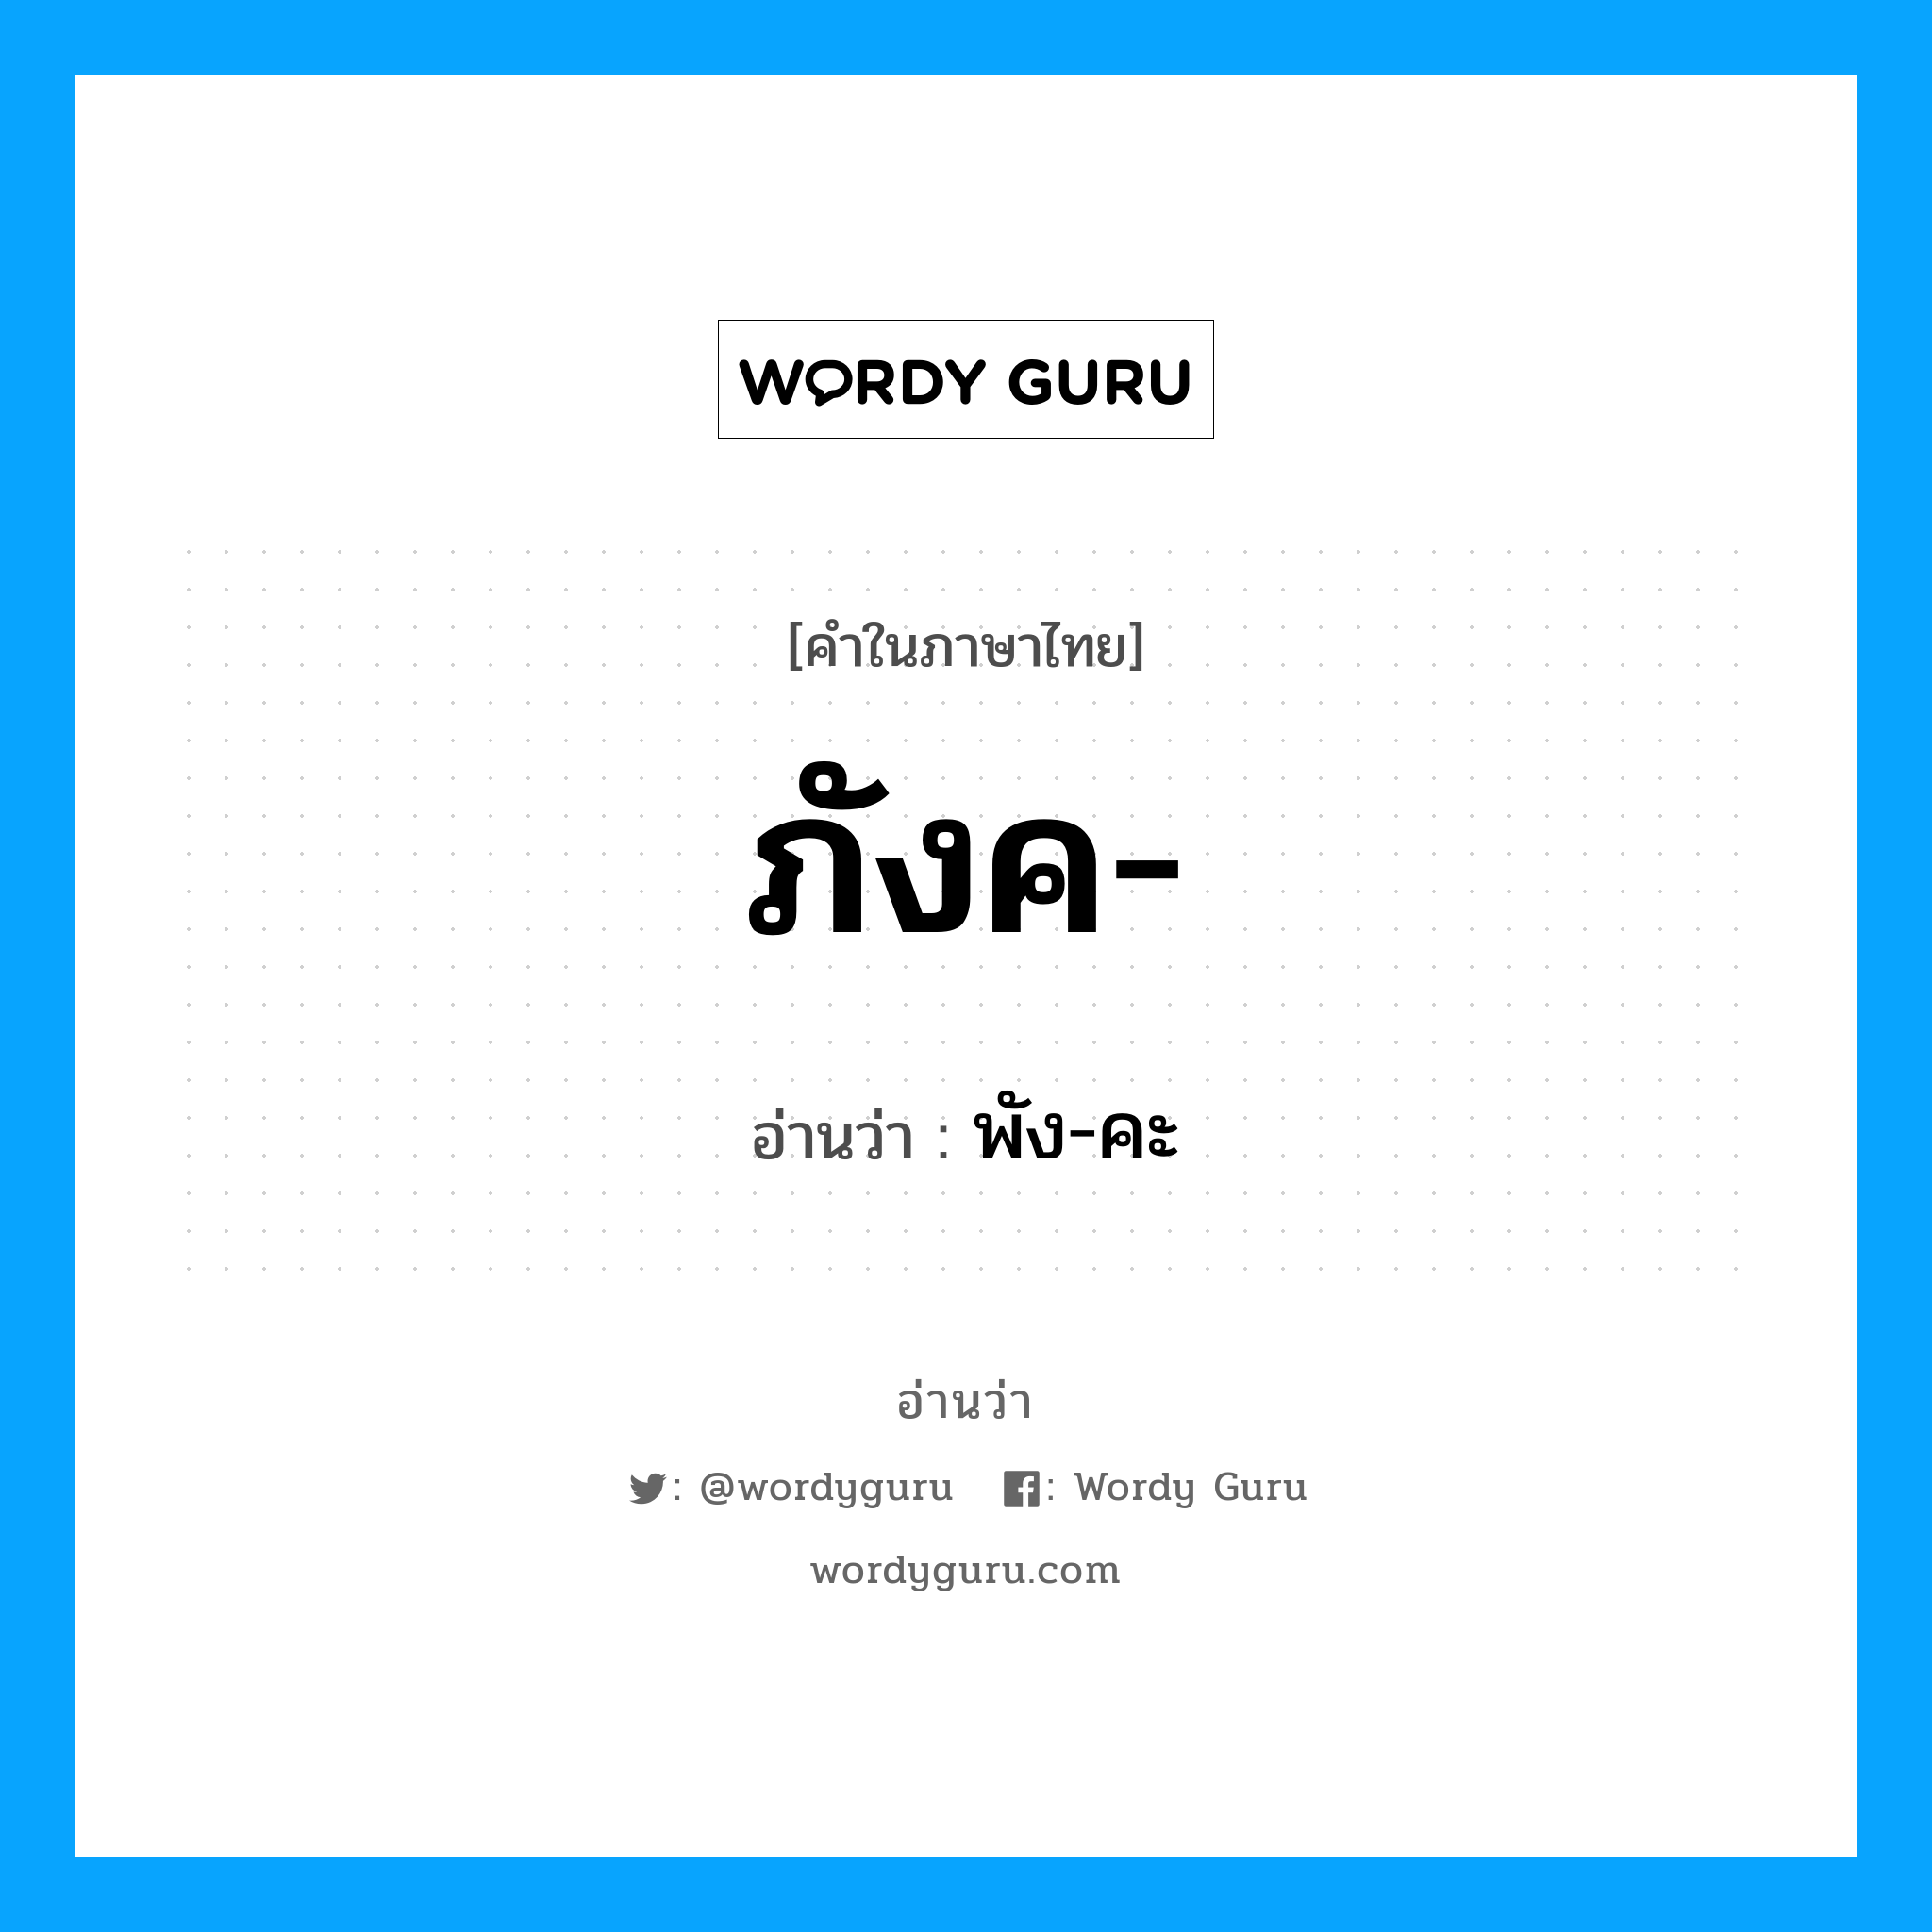 พัง-คะ เป็นคำอ่านของคำไหน?, คำในภาษาไทย พัง-คะ อ่านว่า ภังค-